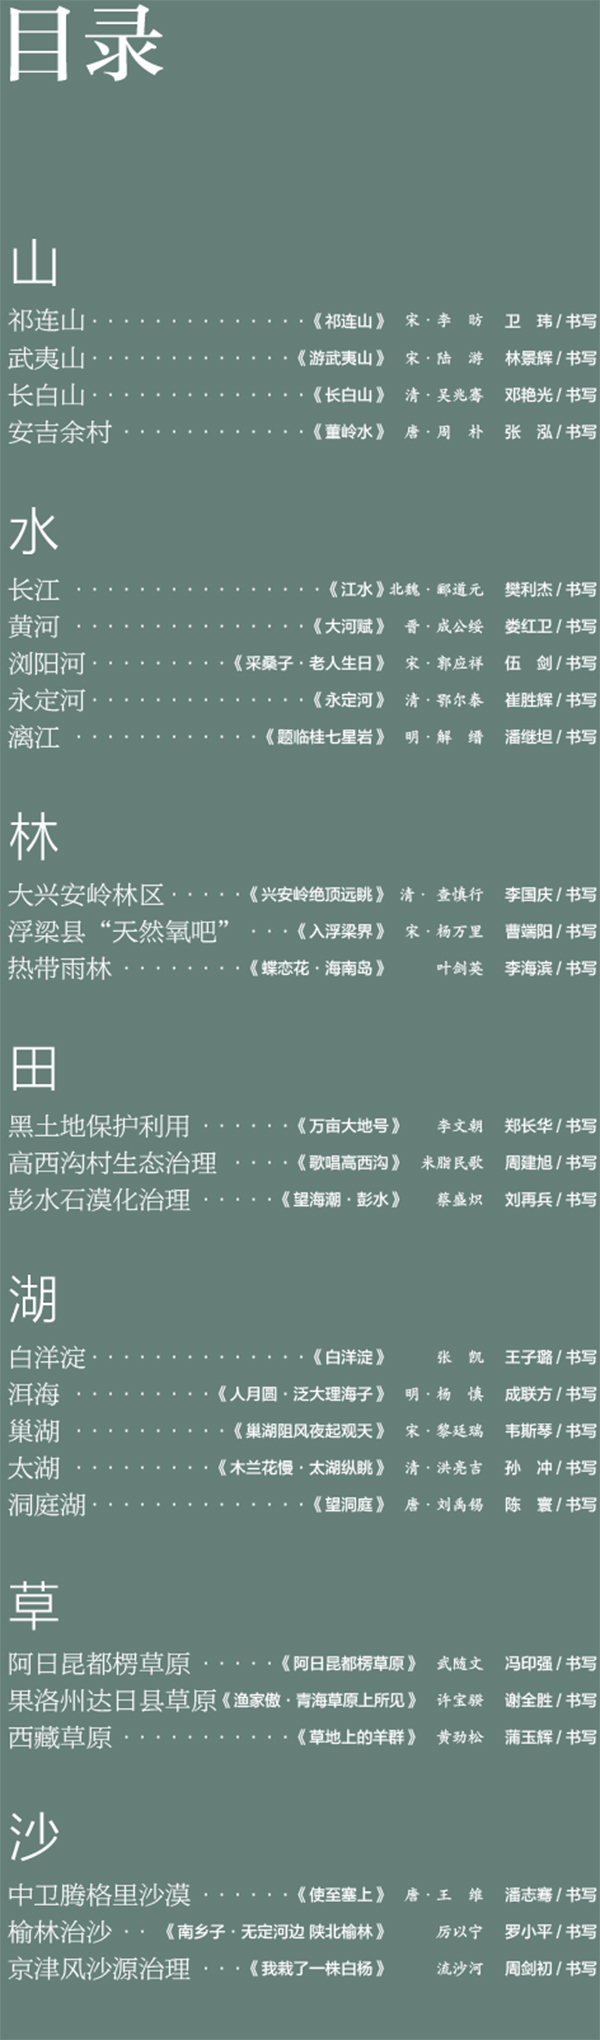 中國書協主題創作書法系列展——美麗中國插圖2題字網